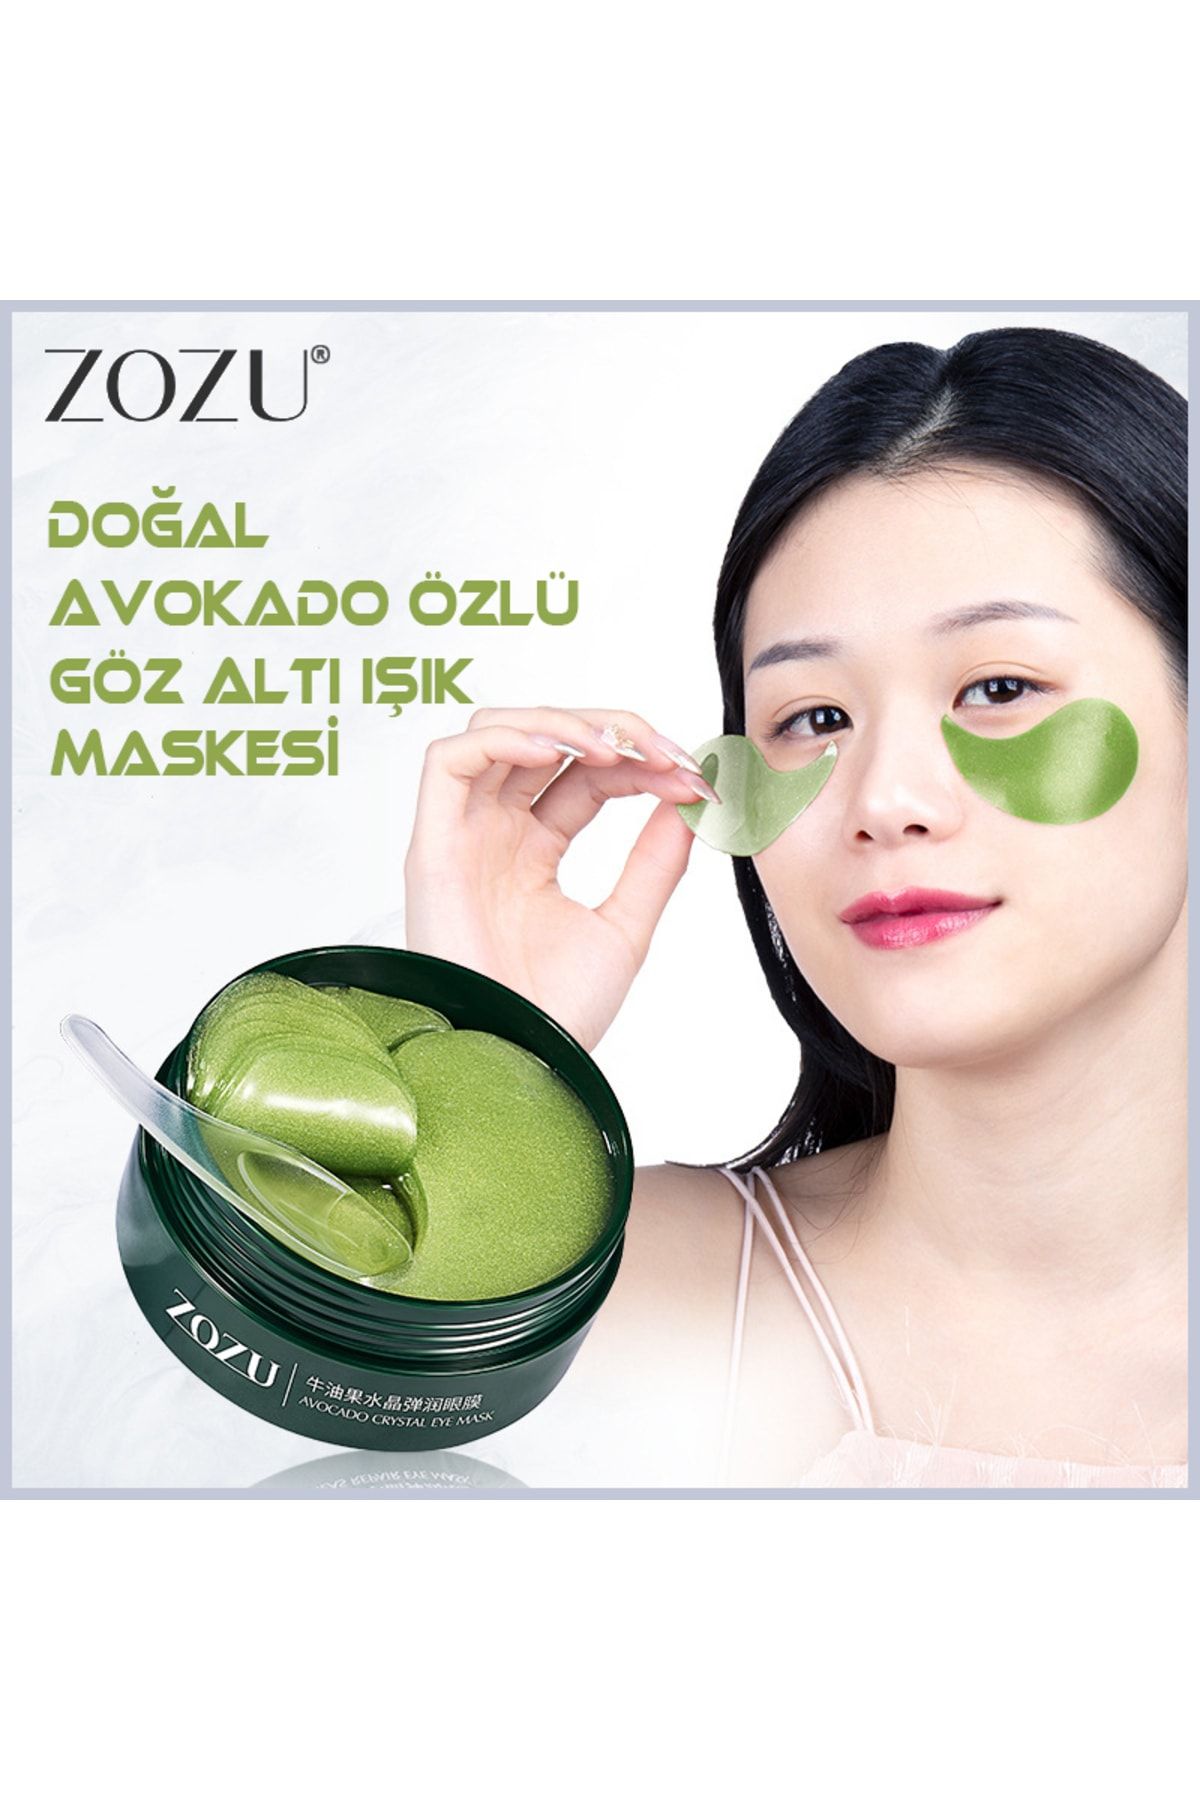 Zozu ® Göz Altı Işık Maskesi Doğal Avokado Özlü 60 Adet